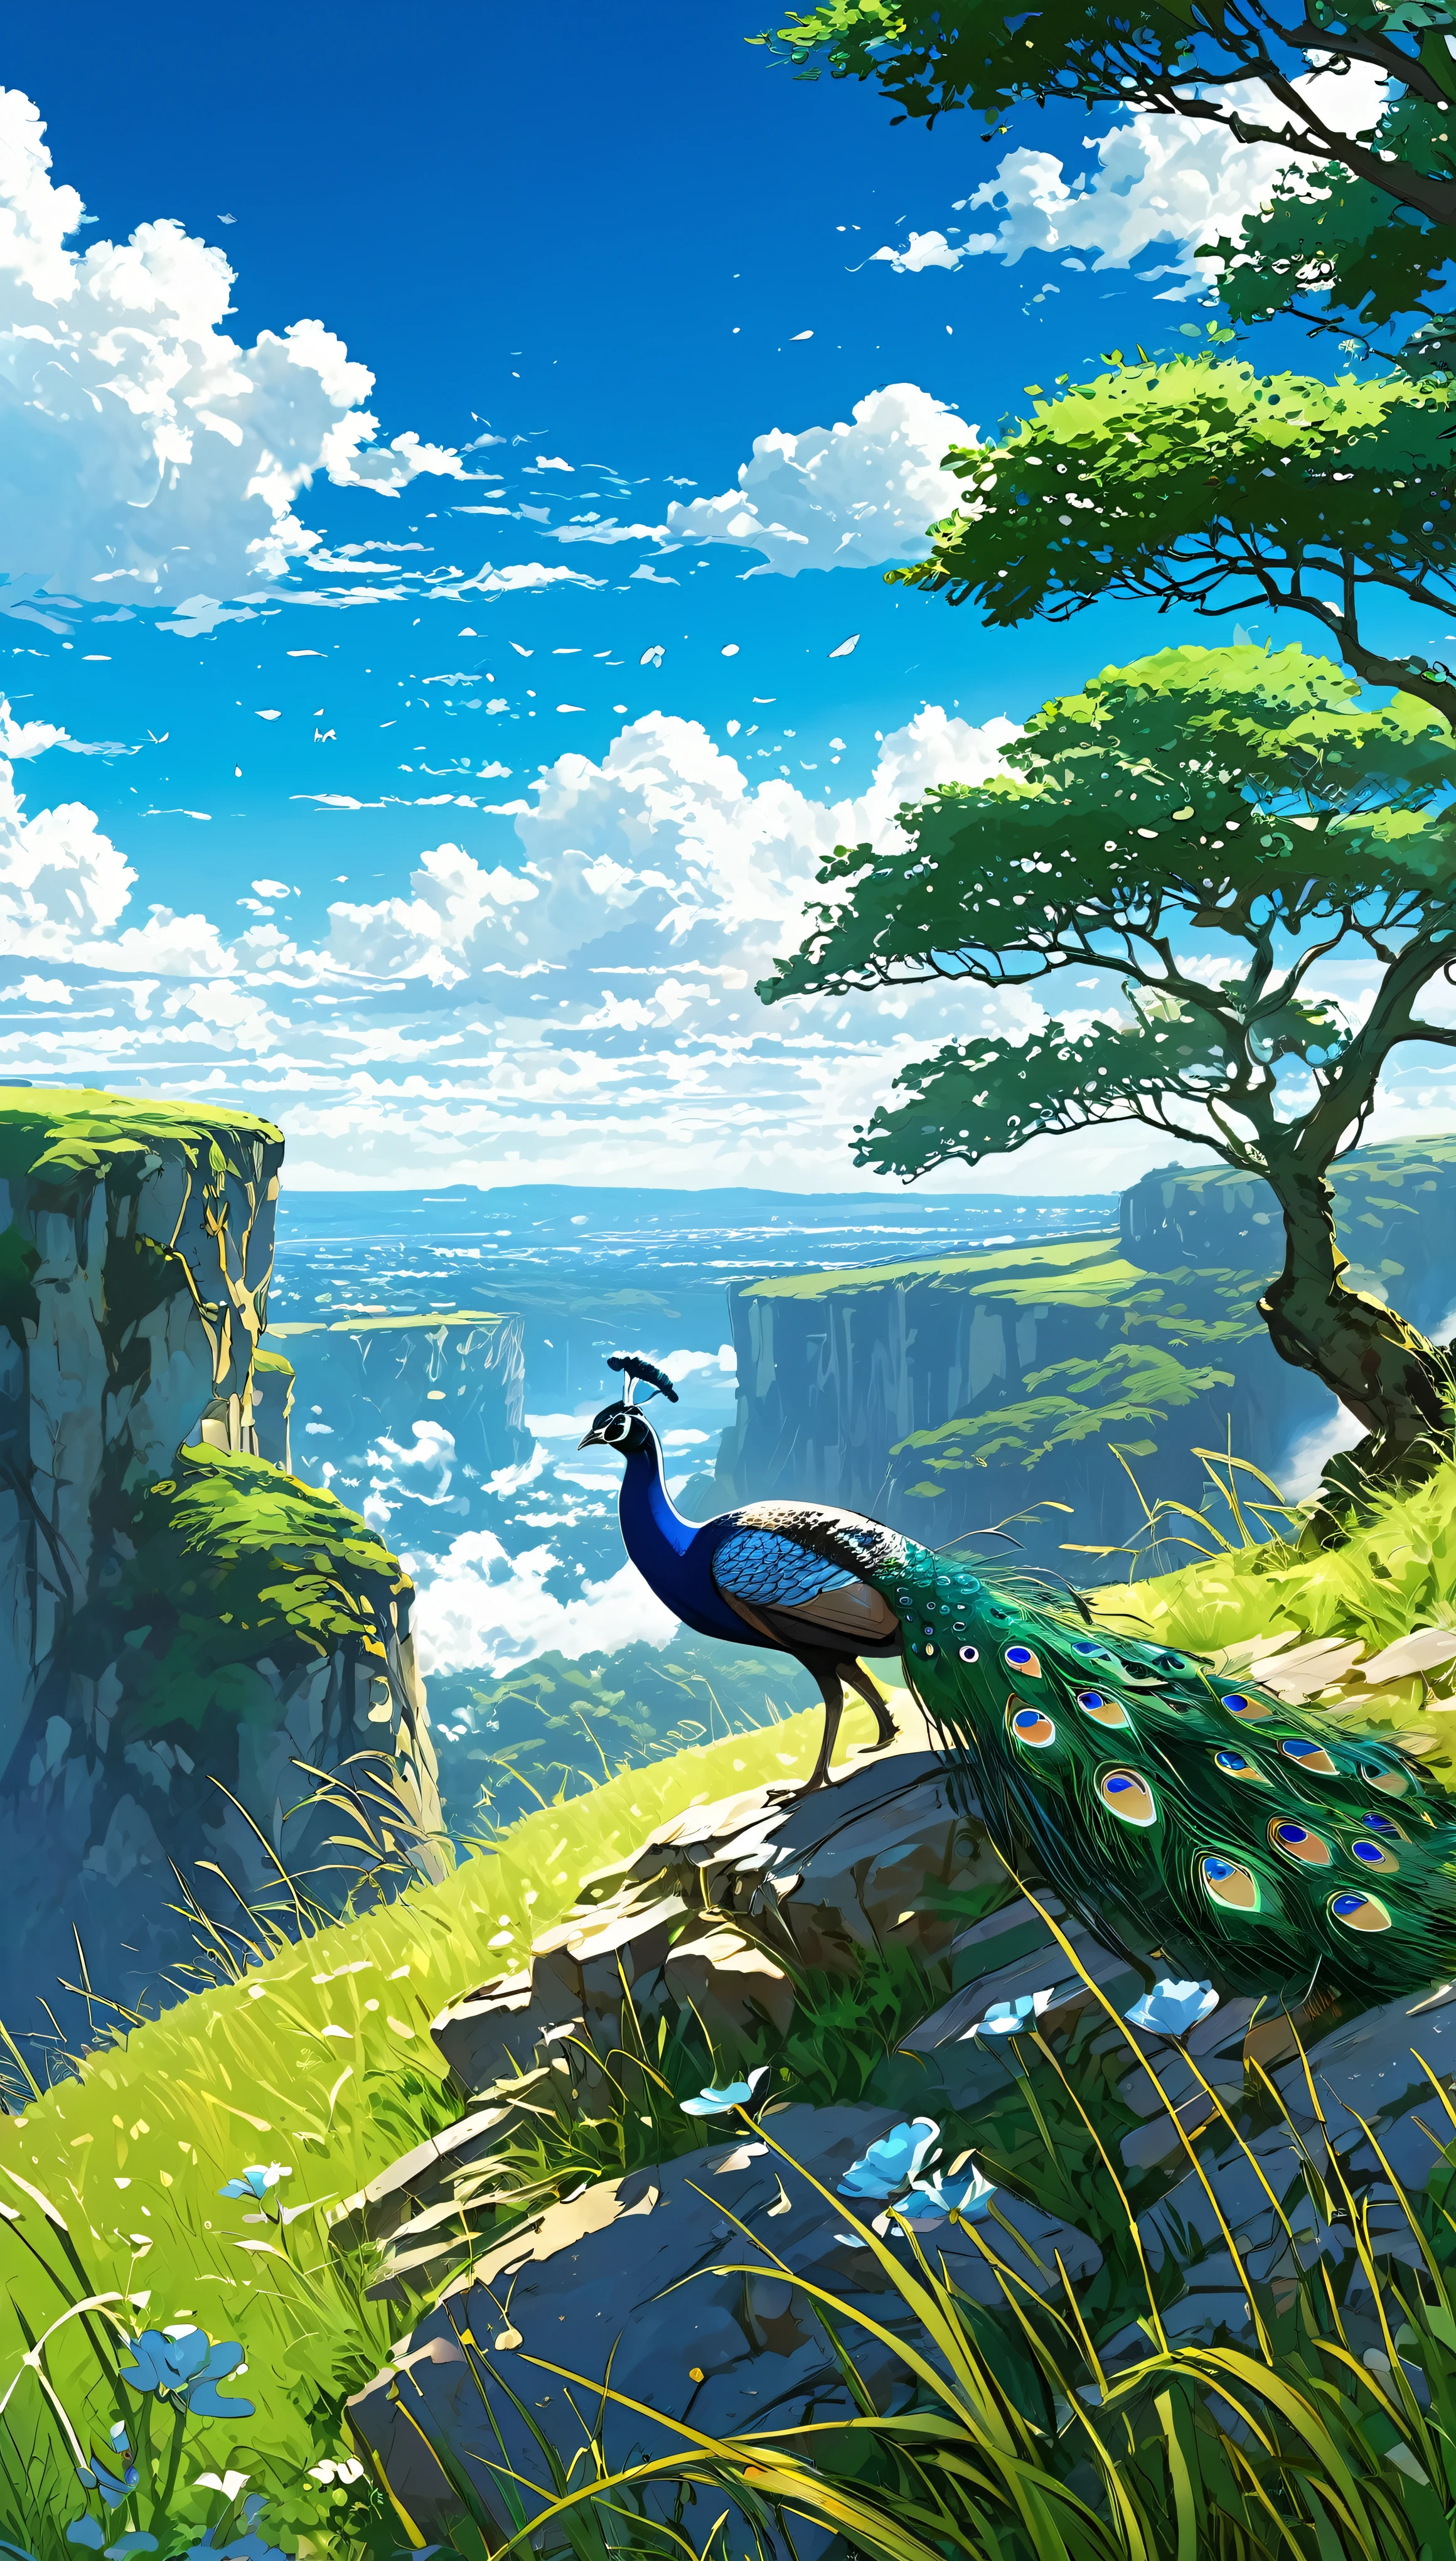 un paon assis sous un arbre près d&#39;une falaise dans un pré , voir un vaste ciel bleu avec des nuages duveteux et des coups de pinceau , pierres d&#39;herbes hautes, , Makoto Shinkai Cyril Rolando, fond d&#39;écran animé 4k, fond d&#39;écran animé 4k, fond animé, Fond d&#39;écran d&#39;art animé 8K, fond animé art, Fond d&#39;écran paysage animé, fond d&#39;écran incroyable, Fond d&#39;écran HD, Fond d&#39;écran animé 4k, Fond d&#39;écran animé 4k, Art Bélier Moross,illustration de Bob Byerley , AshleyWoodArtAI, Greg Rutkowski
